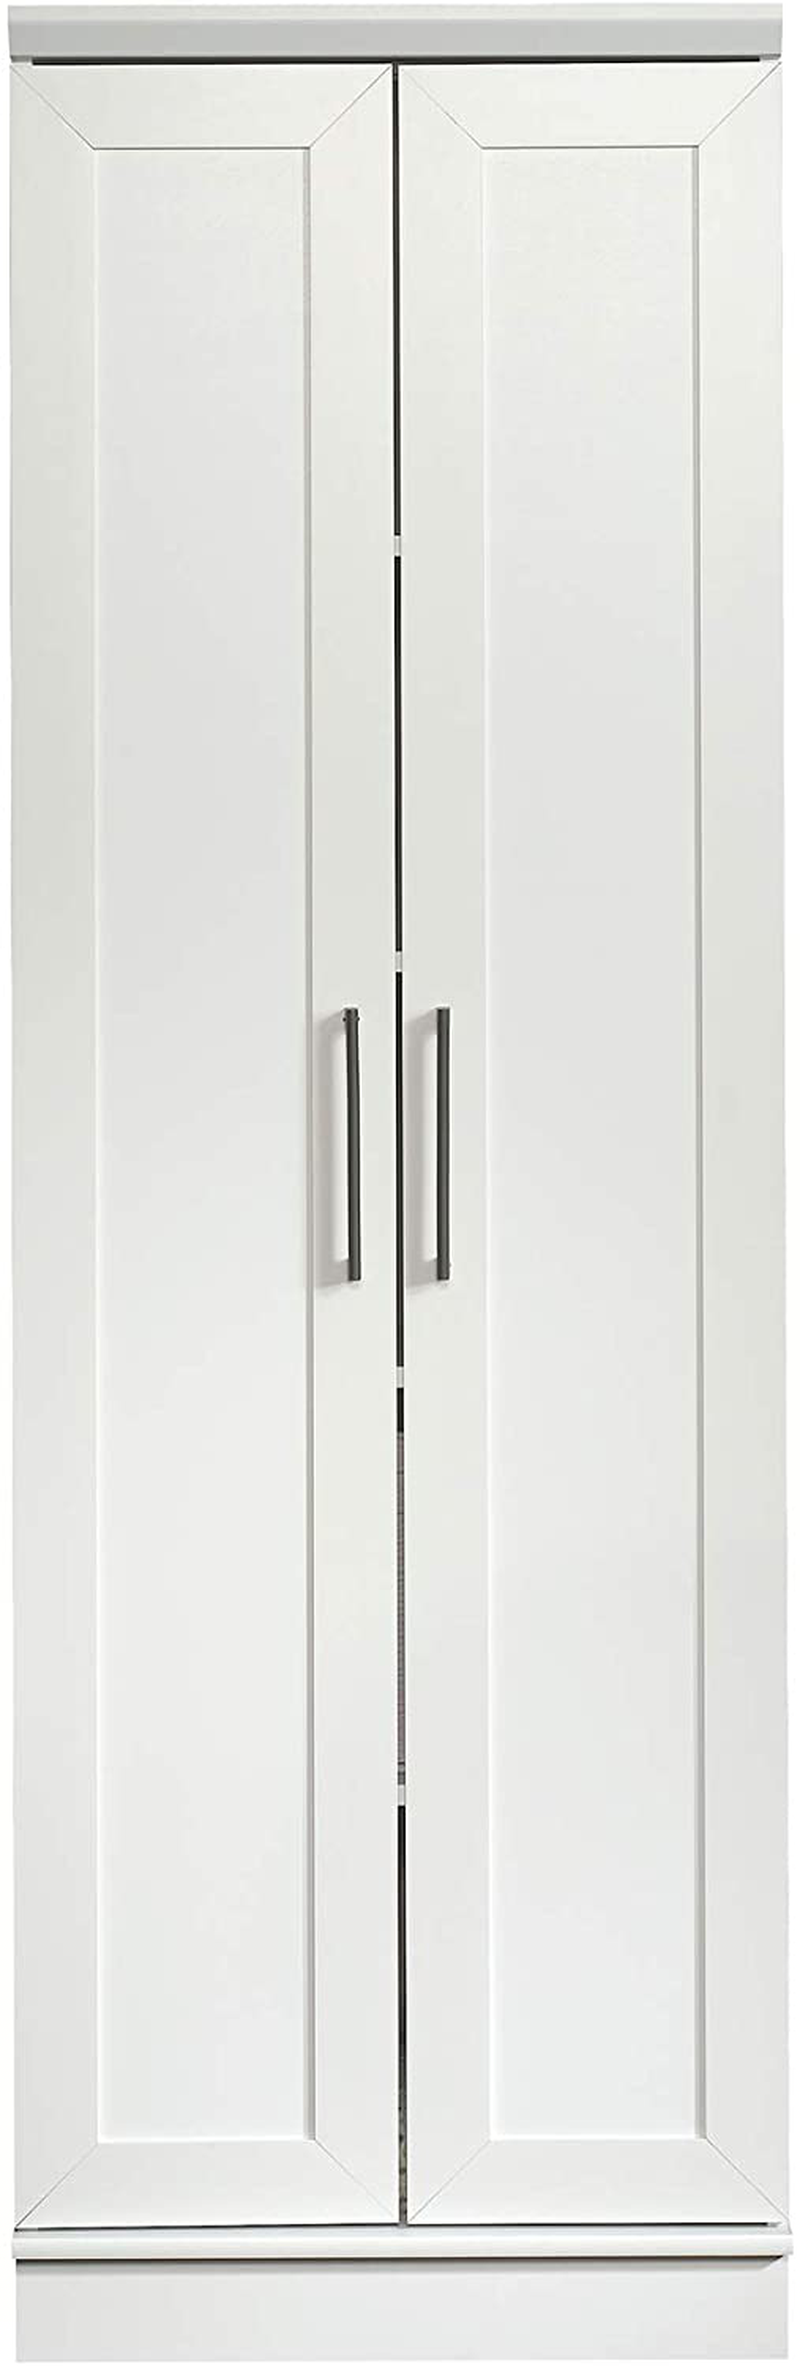 Sauder Homeplus Storage Cabinet, Soft White Finish Home & Garden > Kitchen & Dining > Food Storage Sauder Soft White Finish Storage Cabinet 